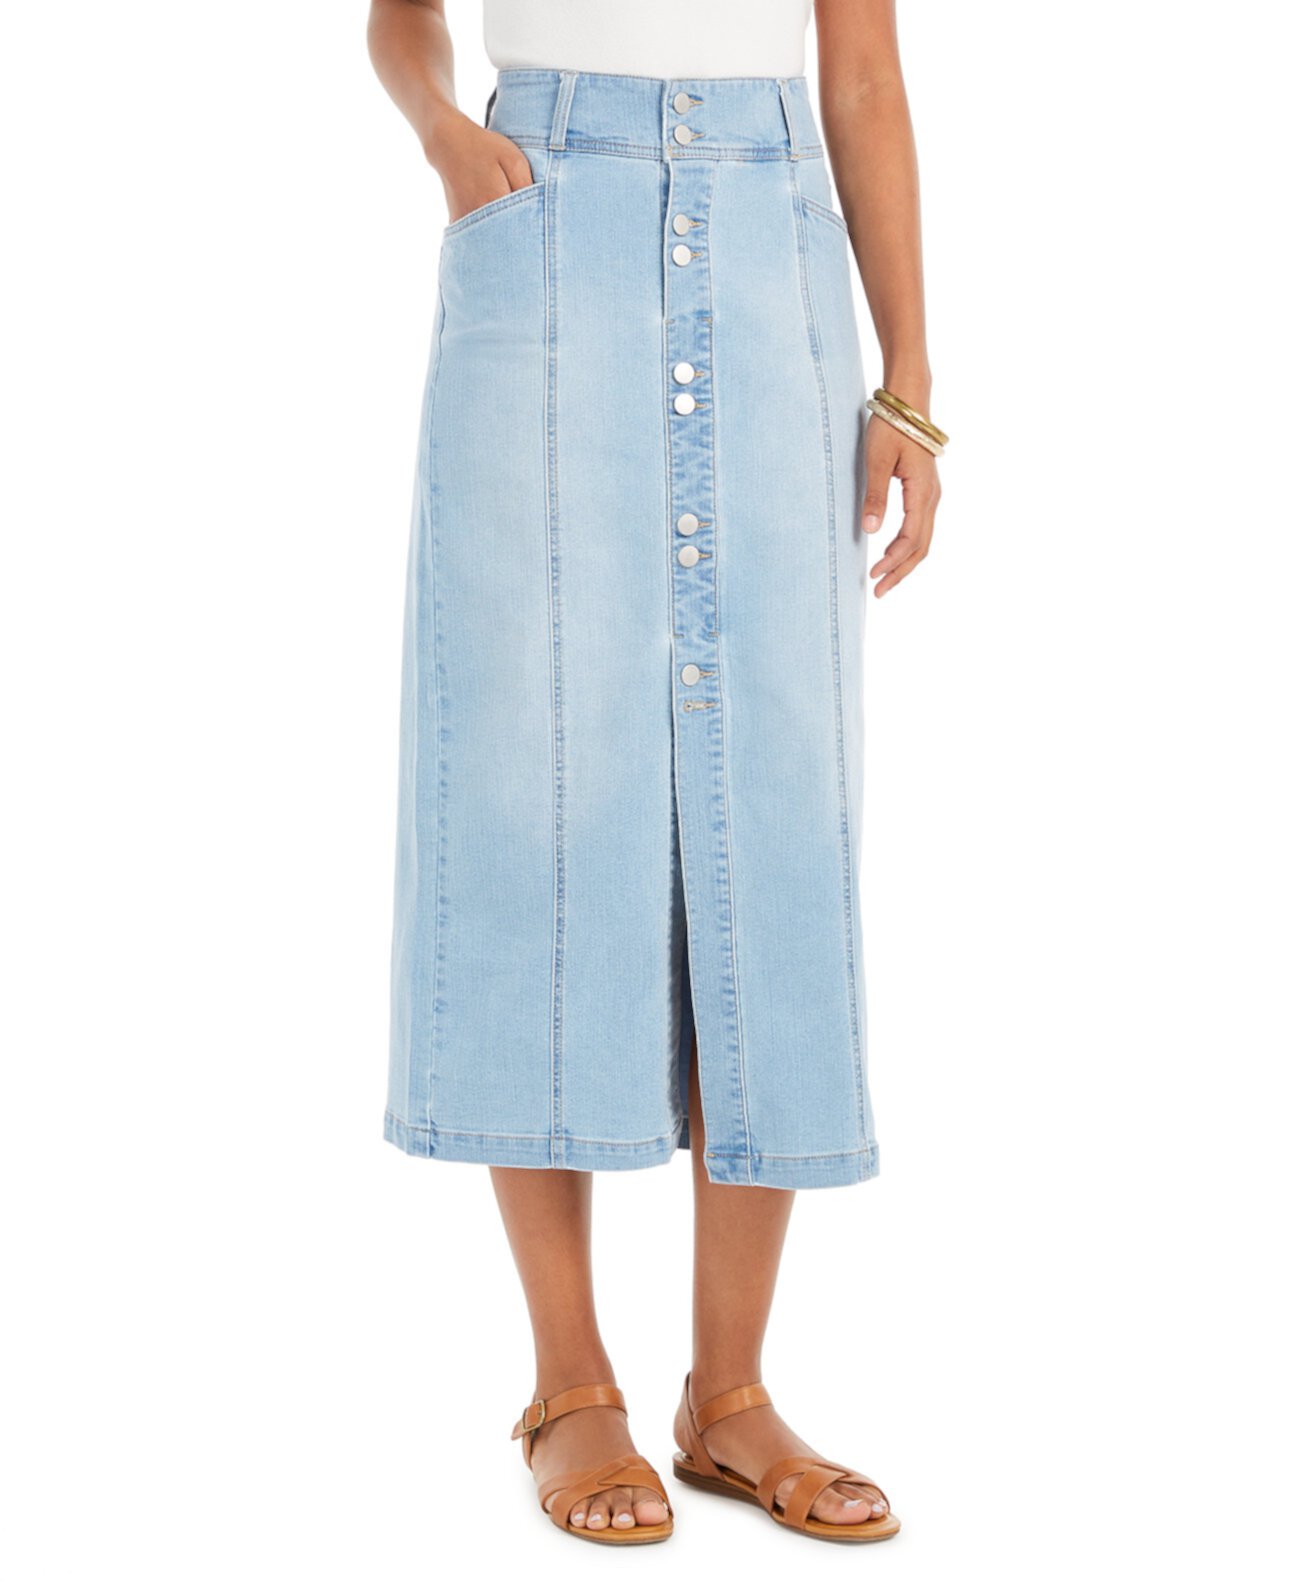 Миниатюрная джинсовая юбка-трапеция, созданная для Macy's Style & Co